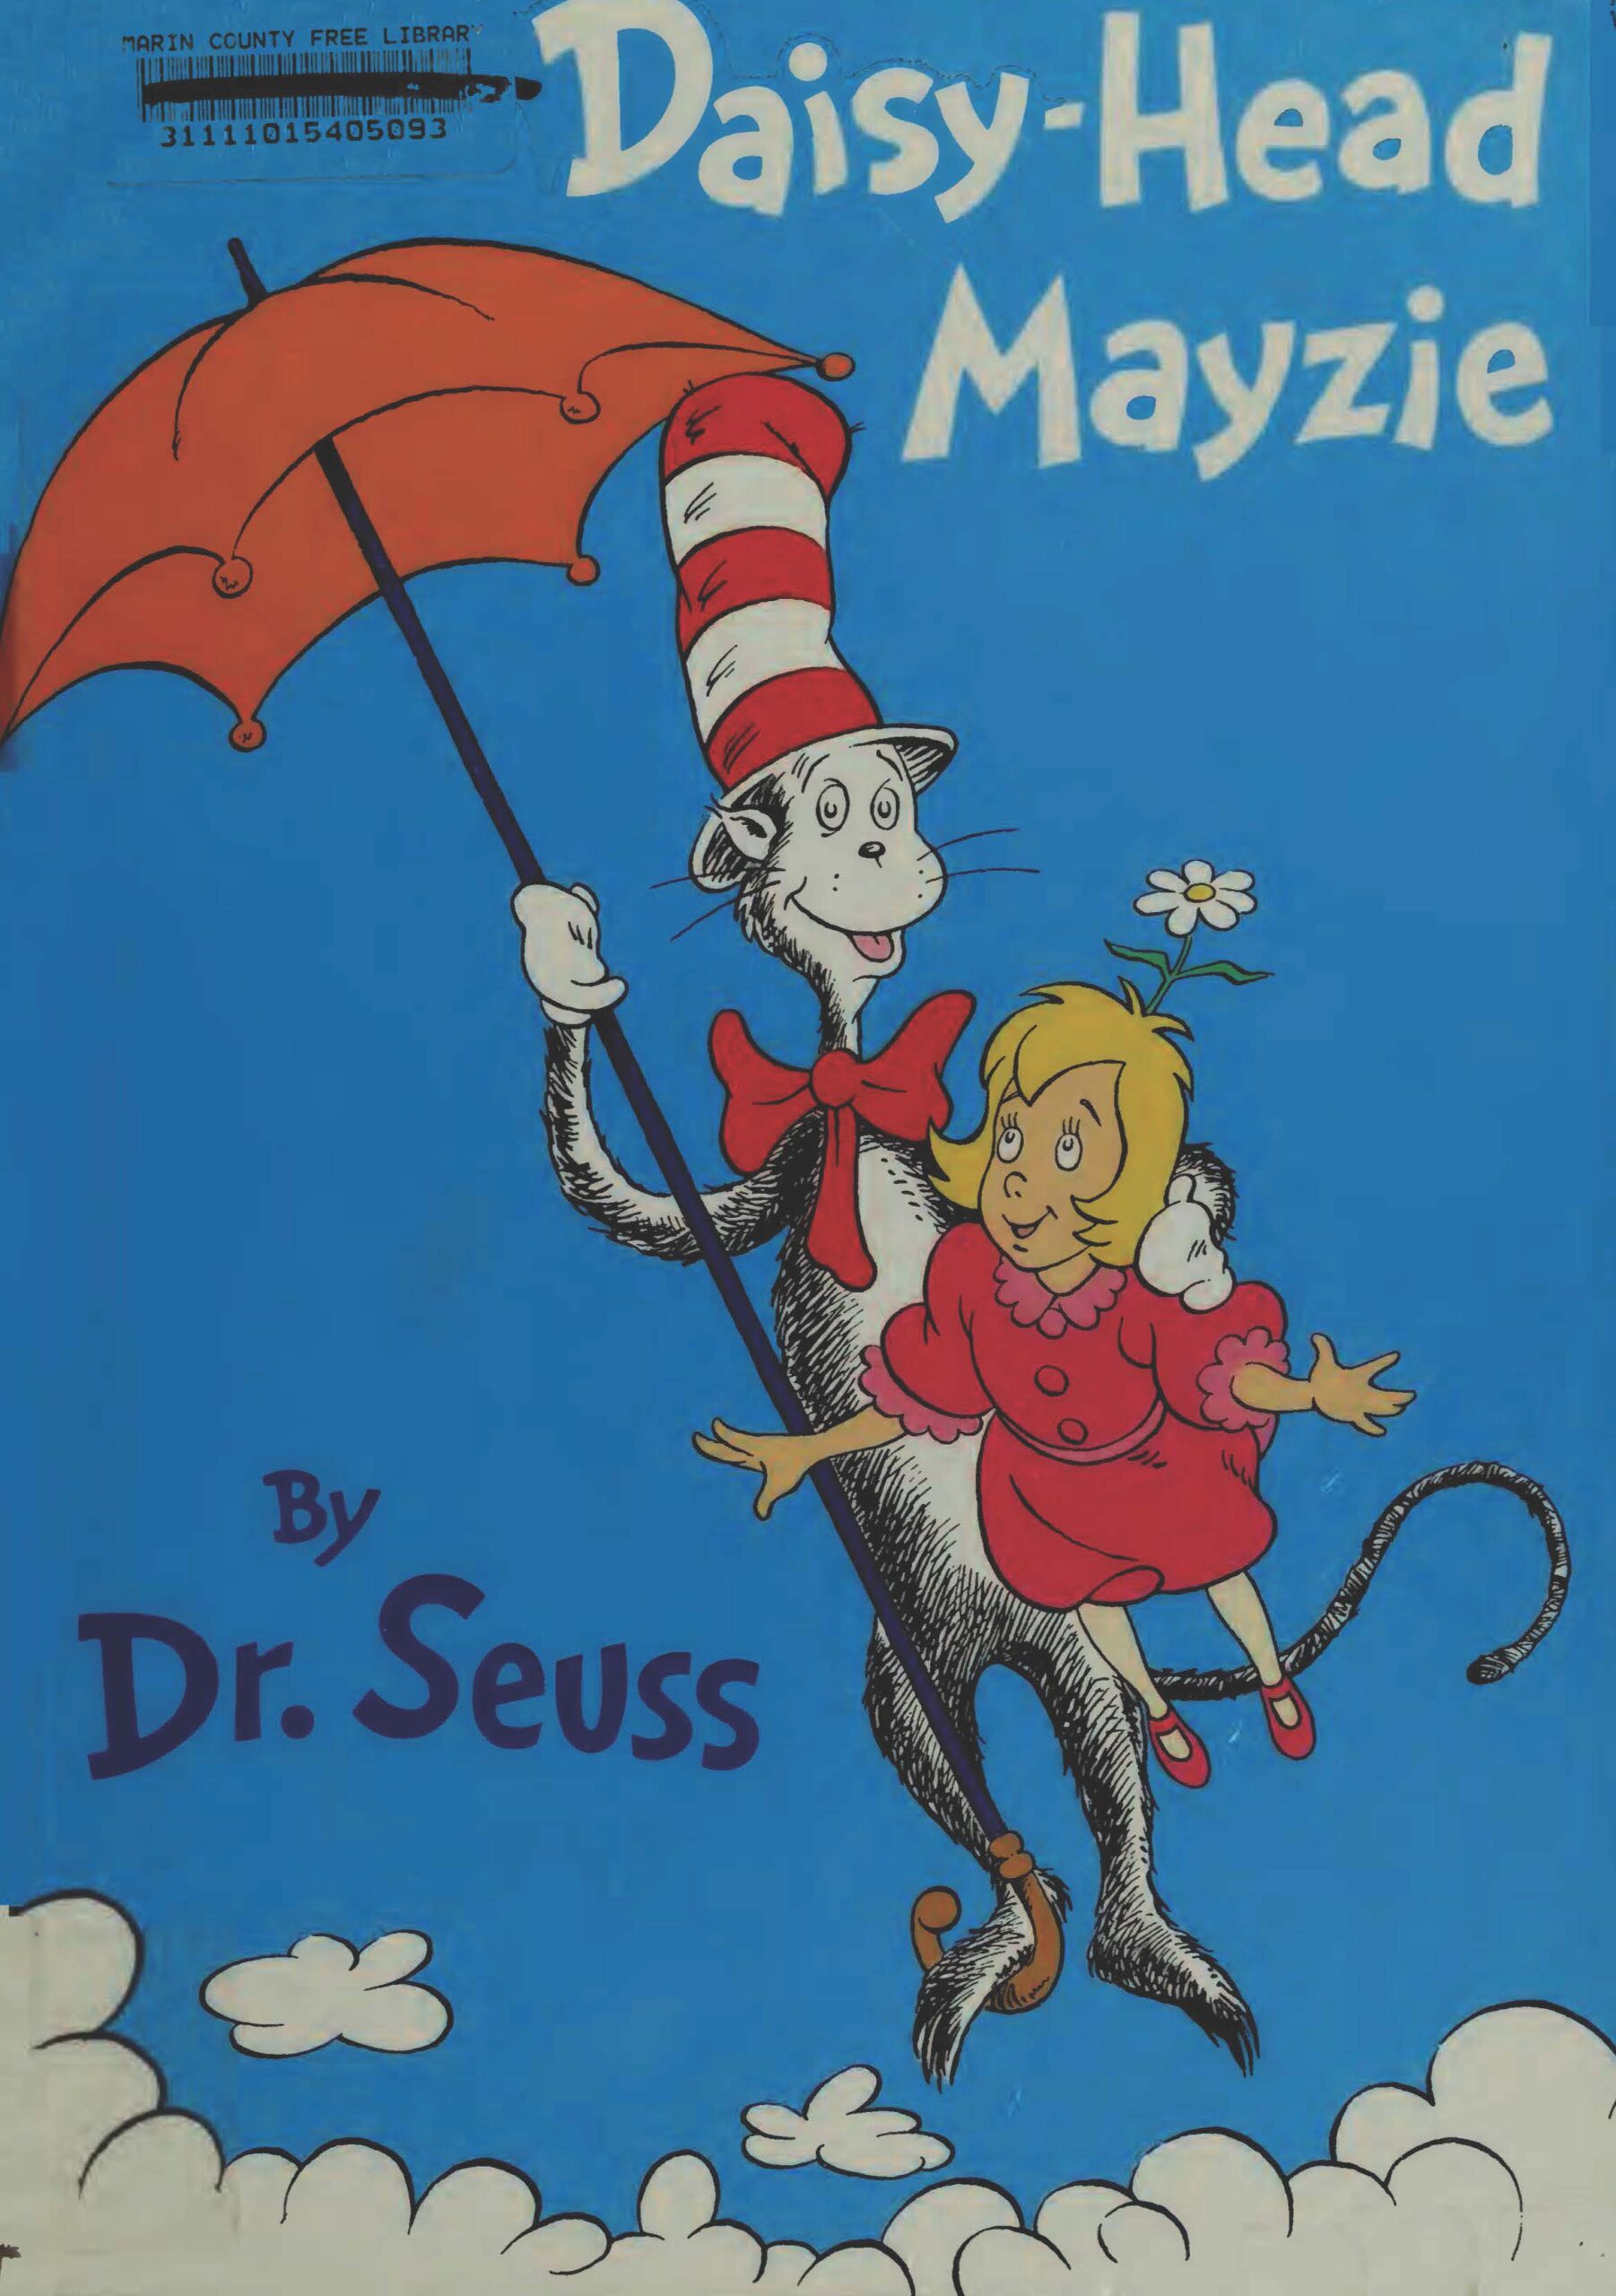 [Truyện] Daisy Head Mayzie by Dr. Seuss - Sách tiếng Anh Hà Nội